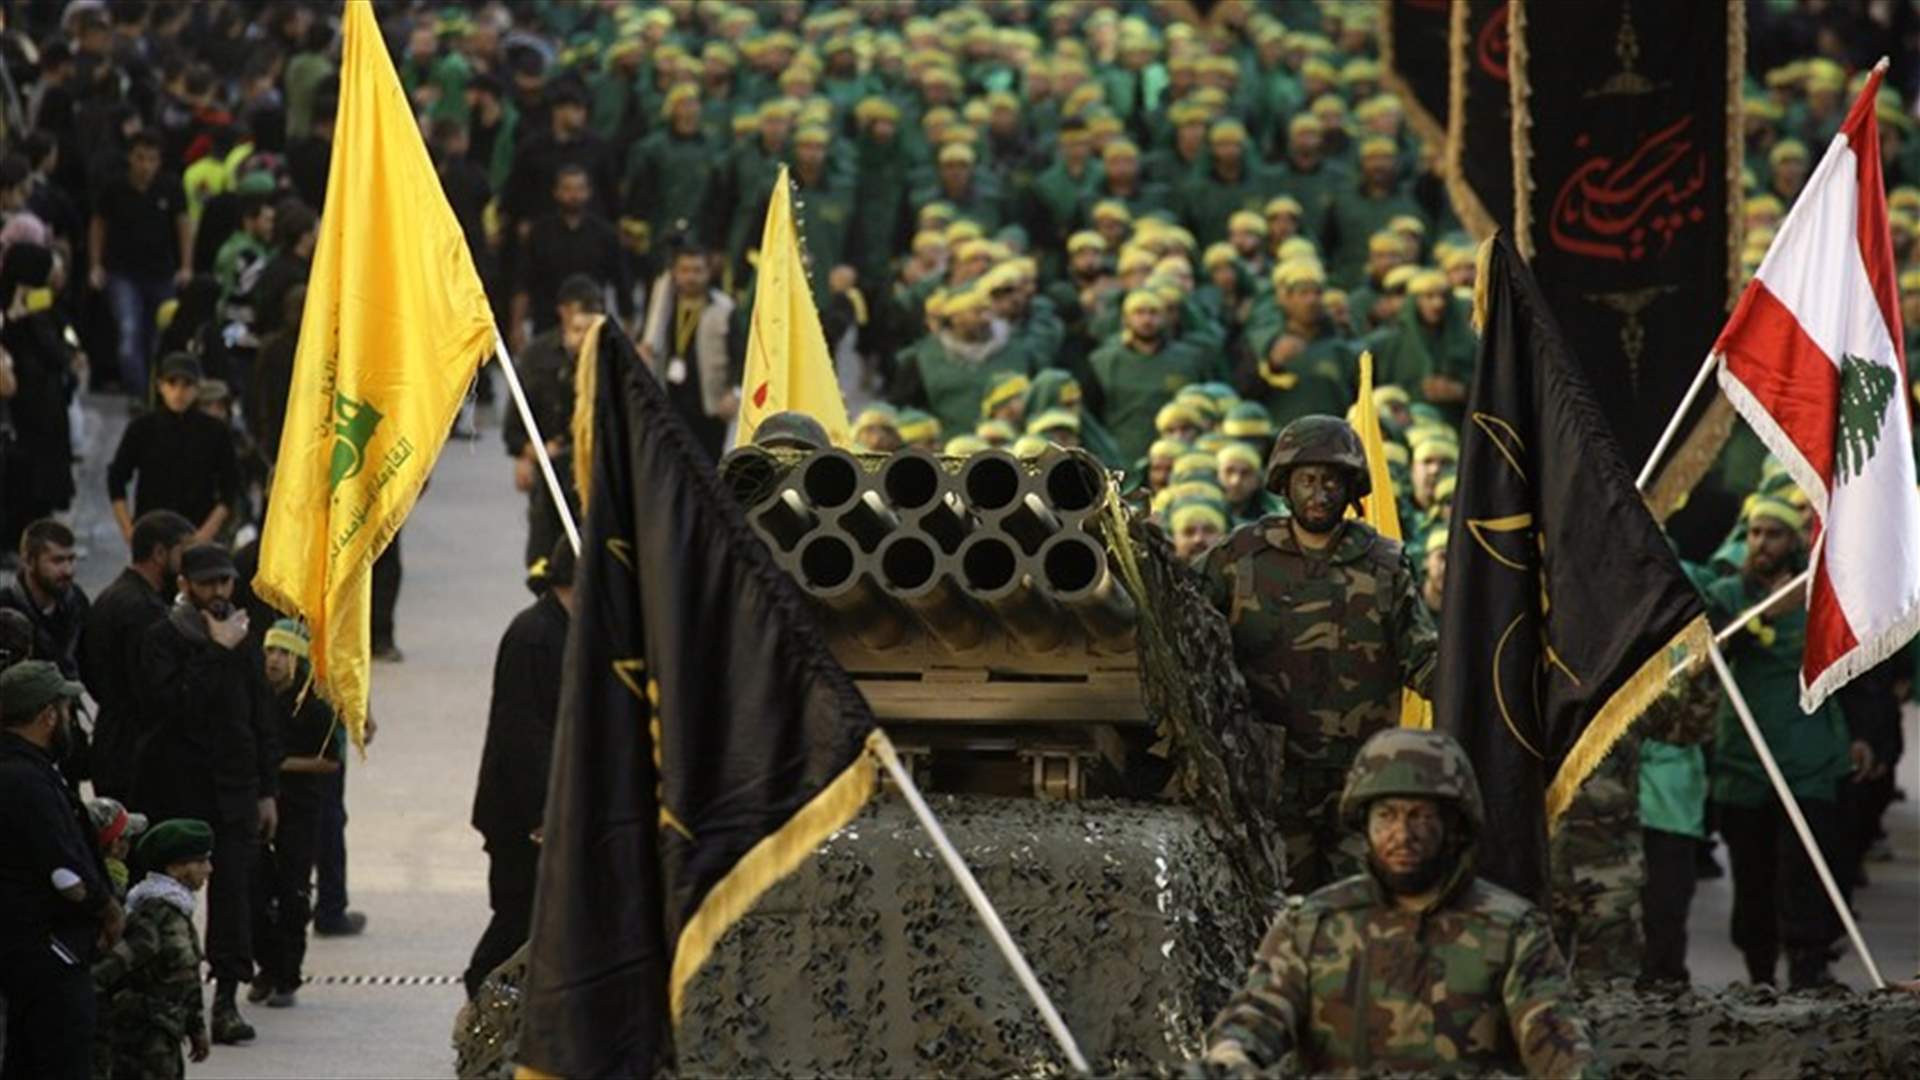 بالتفاصيل - إسرائيل: حزب الله تغيّر... في 2006 كان لديه القليل واليوم هذا ما يملكه